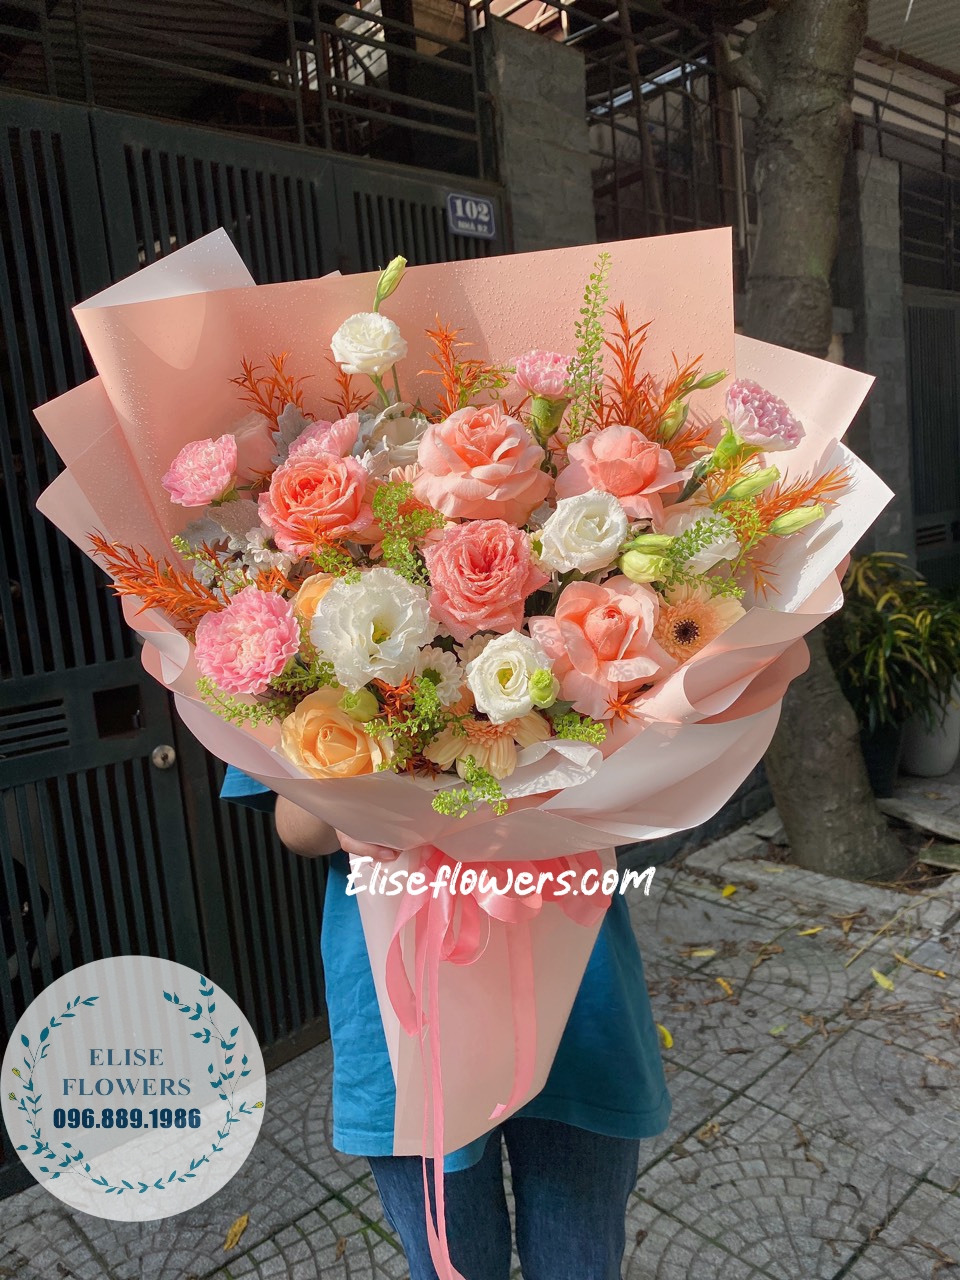 Đặt hoa sinh nhật đẹp tại quận Cầu Giấy - Hà Nội. Dịch vụ giao hoa sinh nhật tận nơi nhanh chóng